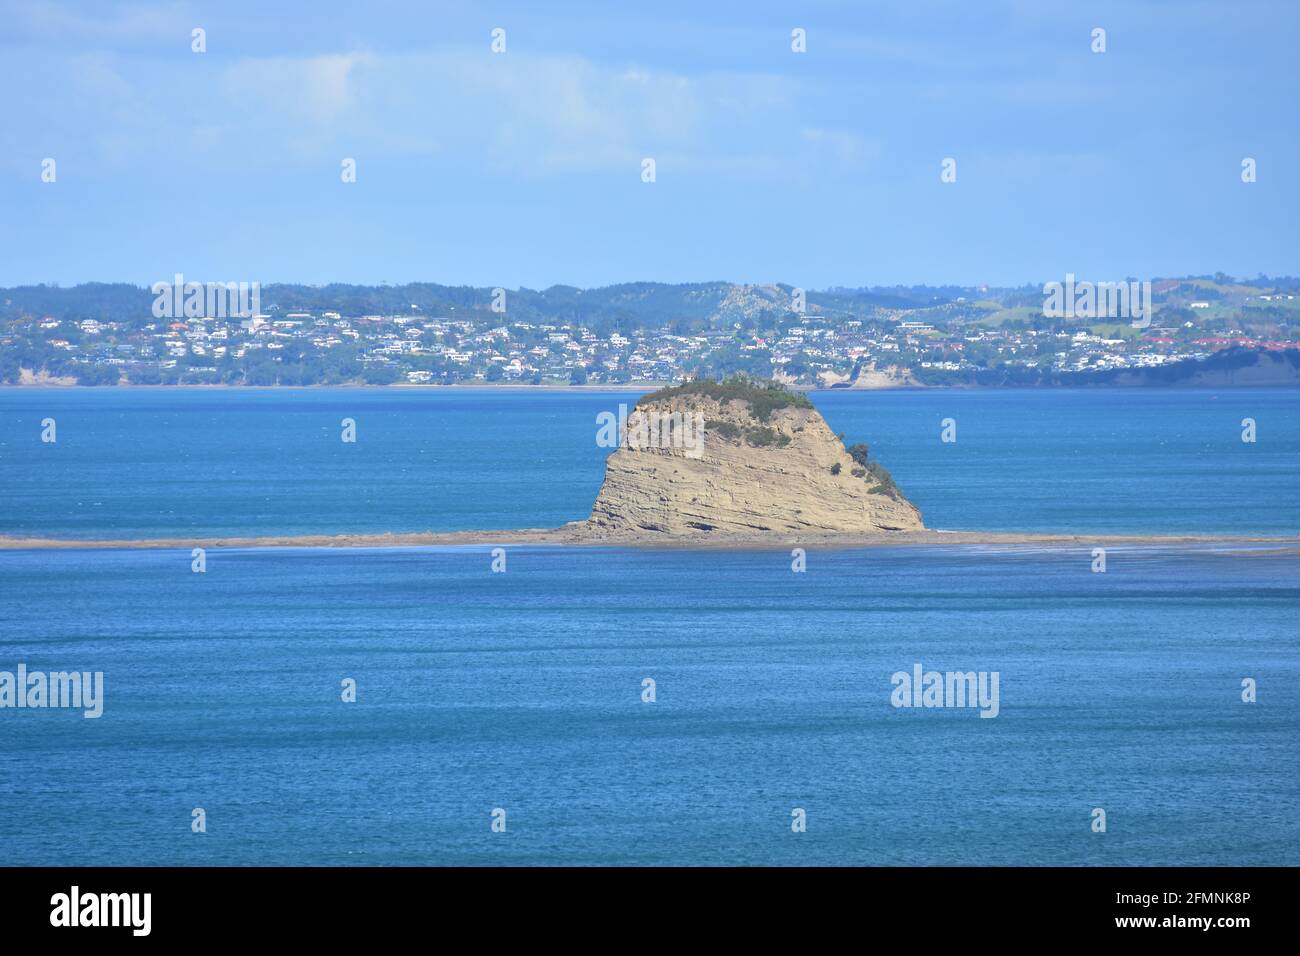 Petite îlot rocheux avec une certaine couverture d'herbe sur le haut du récif rocheux qui dépasse de la mer bleue à marée basse. Banque D'Images